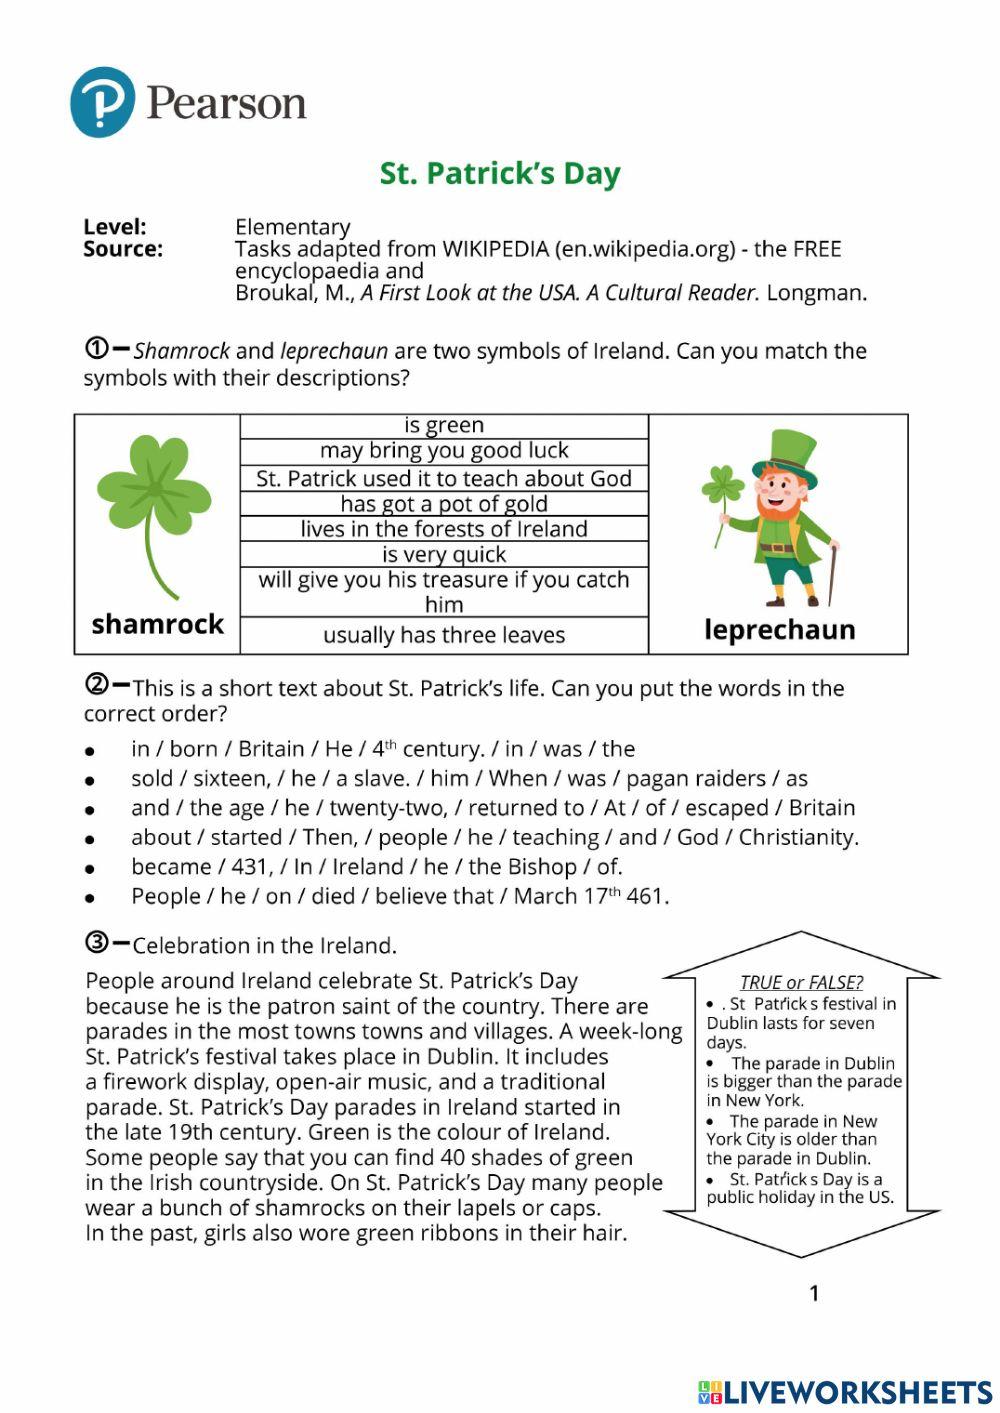 St Patrick's day info